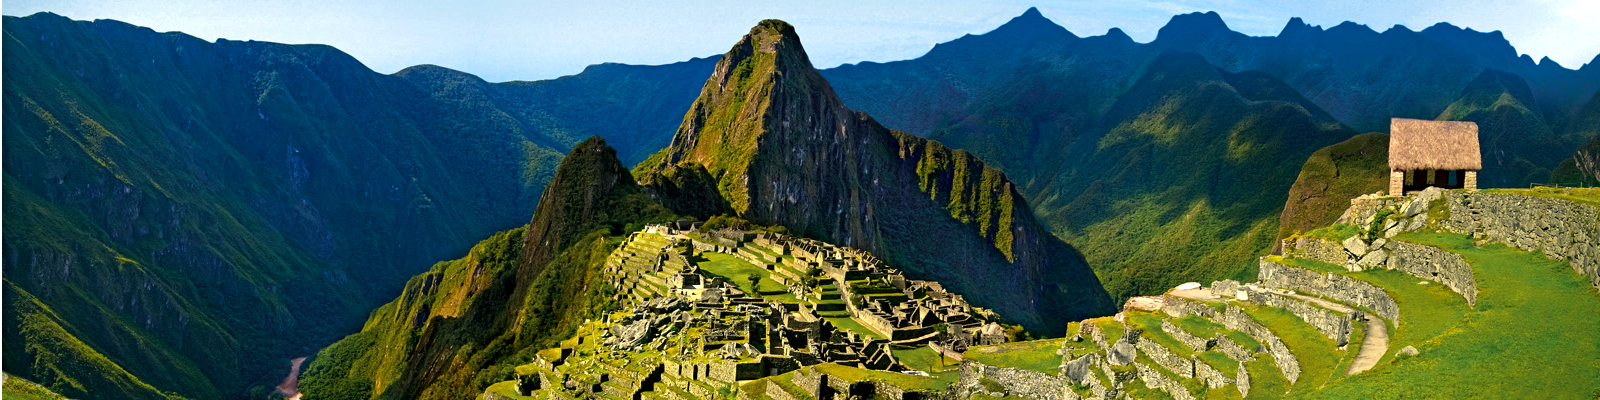 Machu Picchu / Peru (Fonte: http://www.peru.travel/)